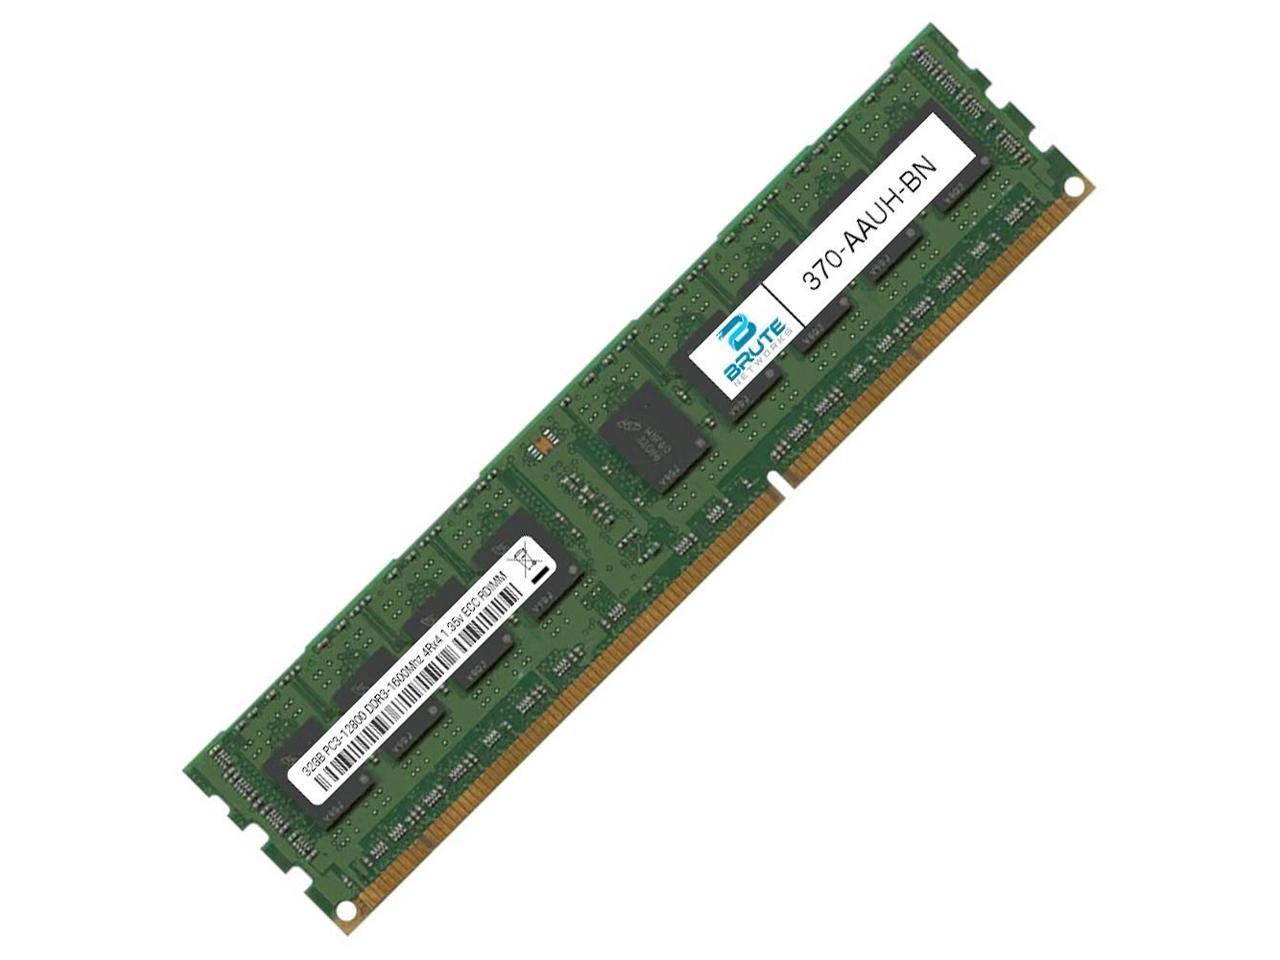 for Server Dedicated 32GB DDR3 Memory 1600MHZ 240Pin 4R*4 ECC REG Memory RAM for PC3-12800R Dual CPU Motherboard